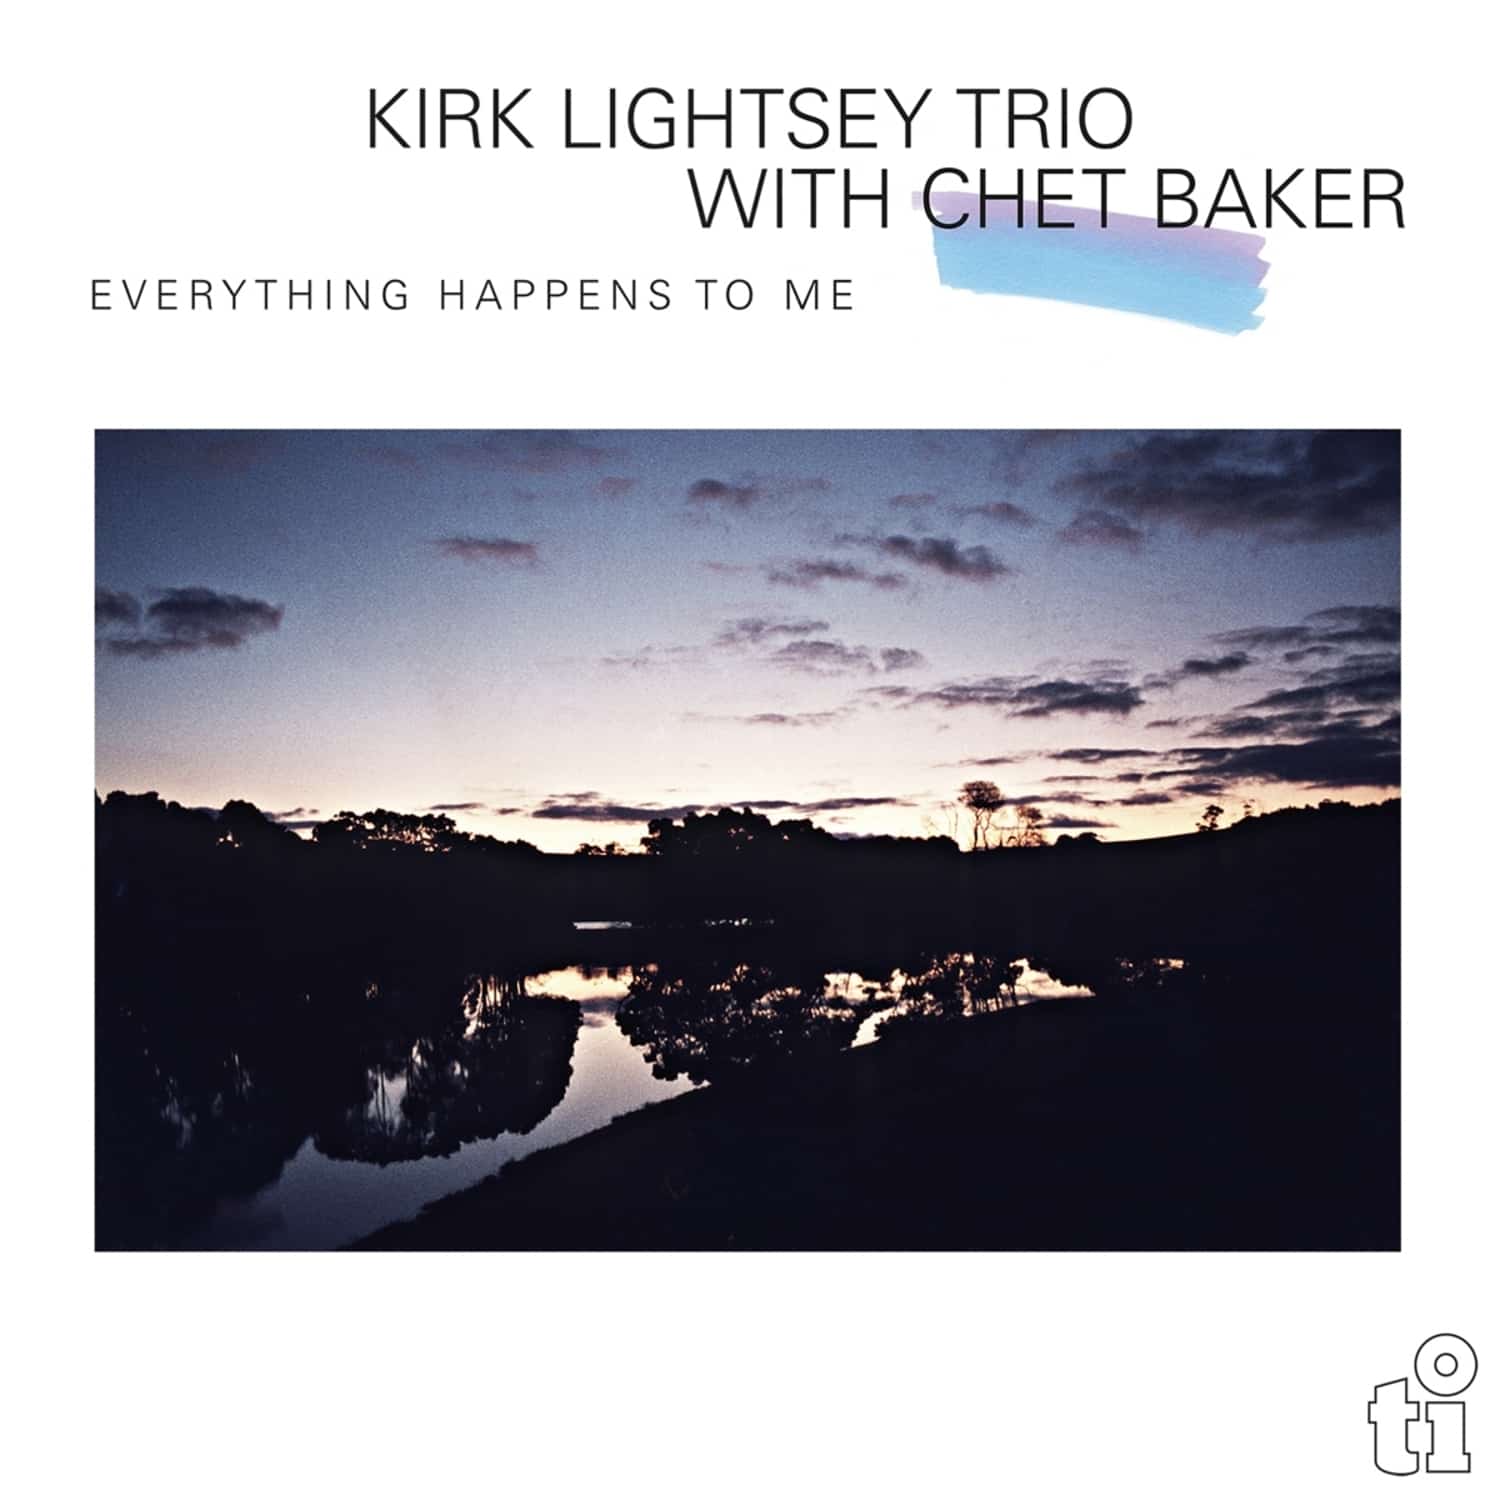 Kirk Lightsey Trio & Chet Baker - EVERYTHING HAPPENS TO ME 